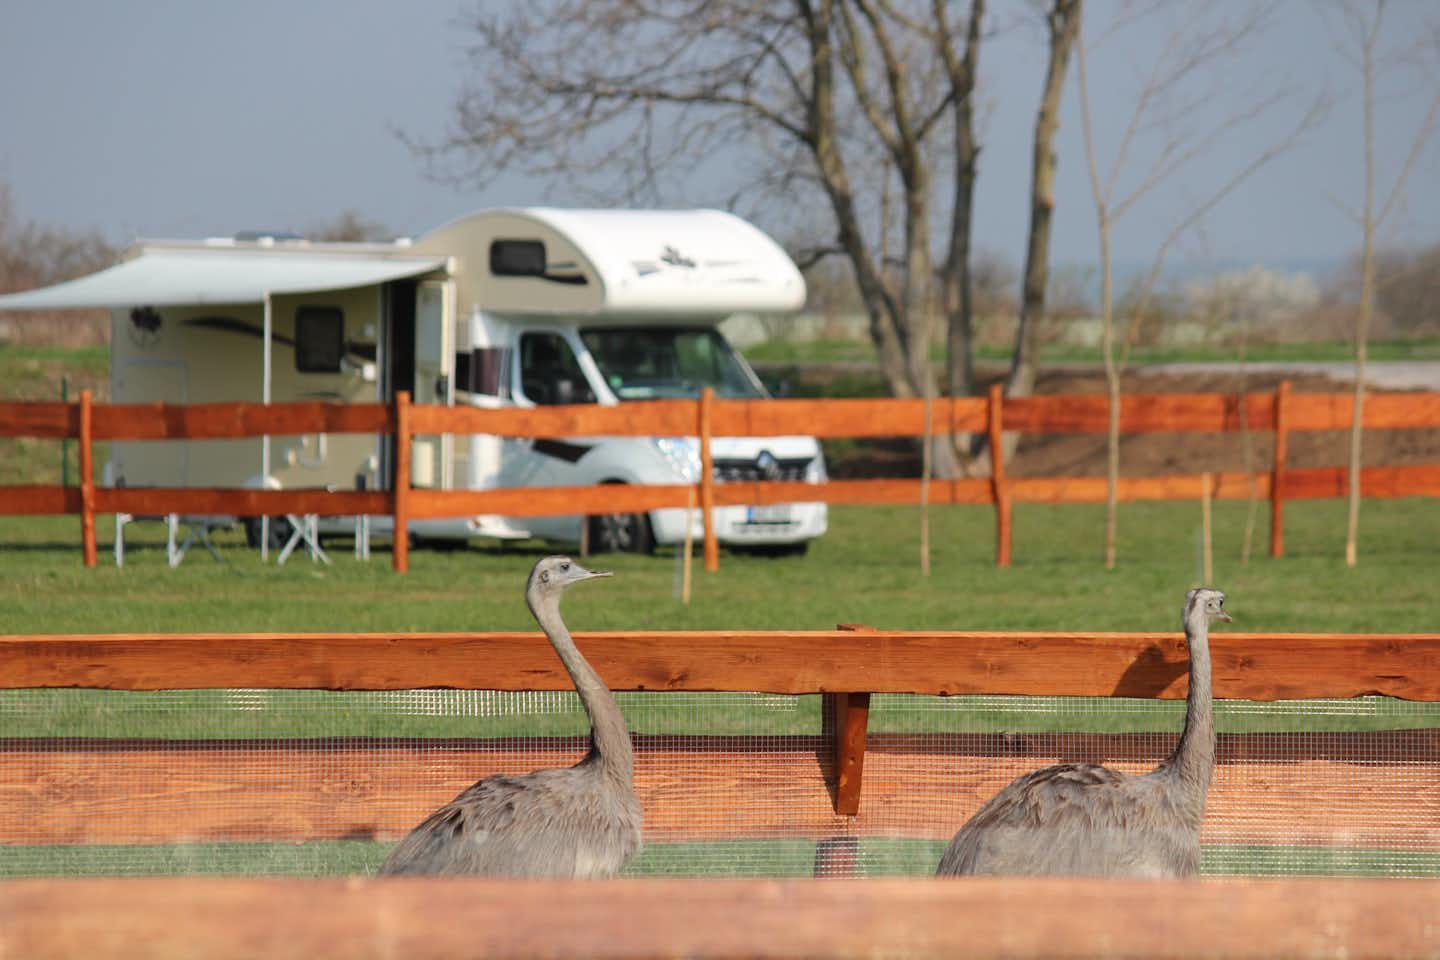 Zoopark Zelčín - zwei junge Strauße im Streichelzoo vor den Standplätzen des Campingplatzes mit Wohnmobil